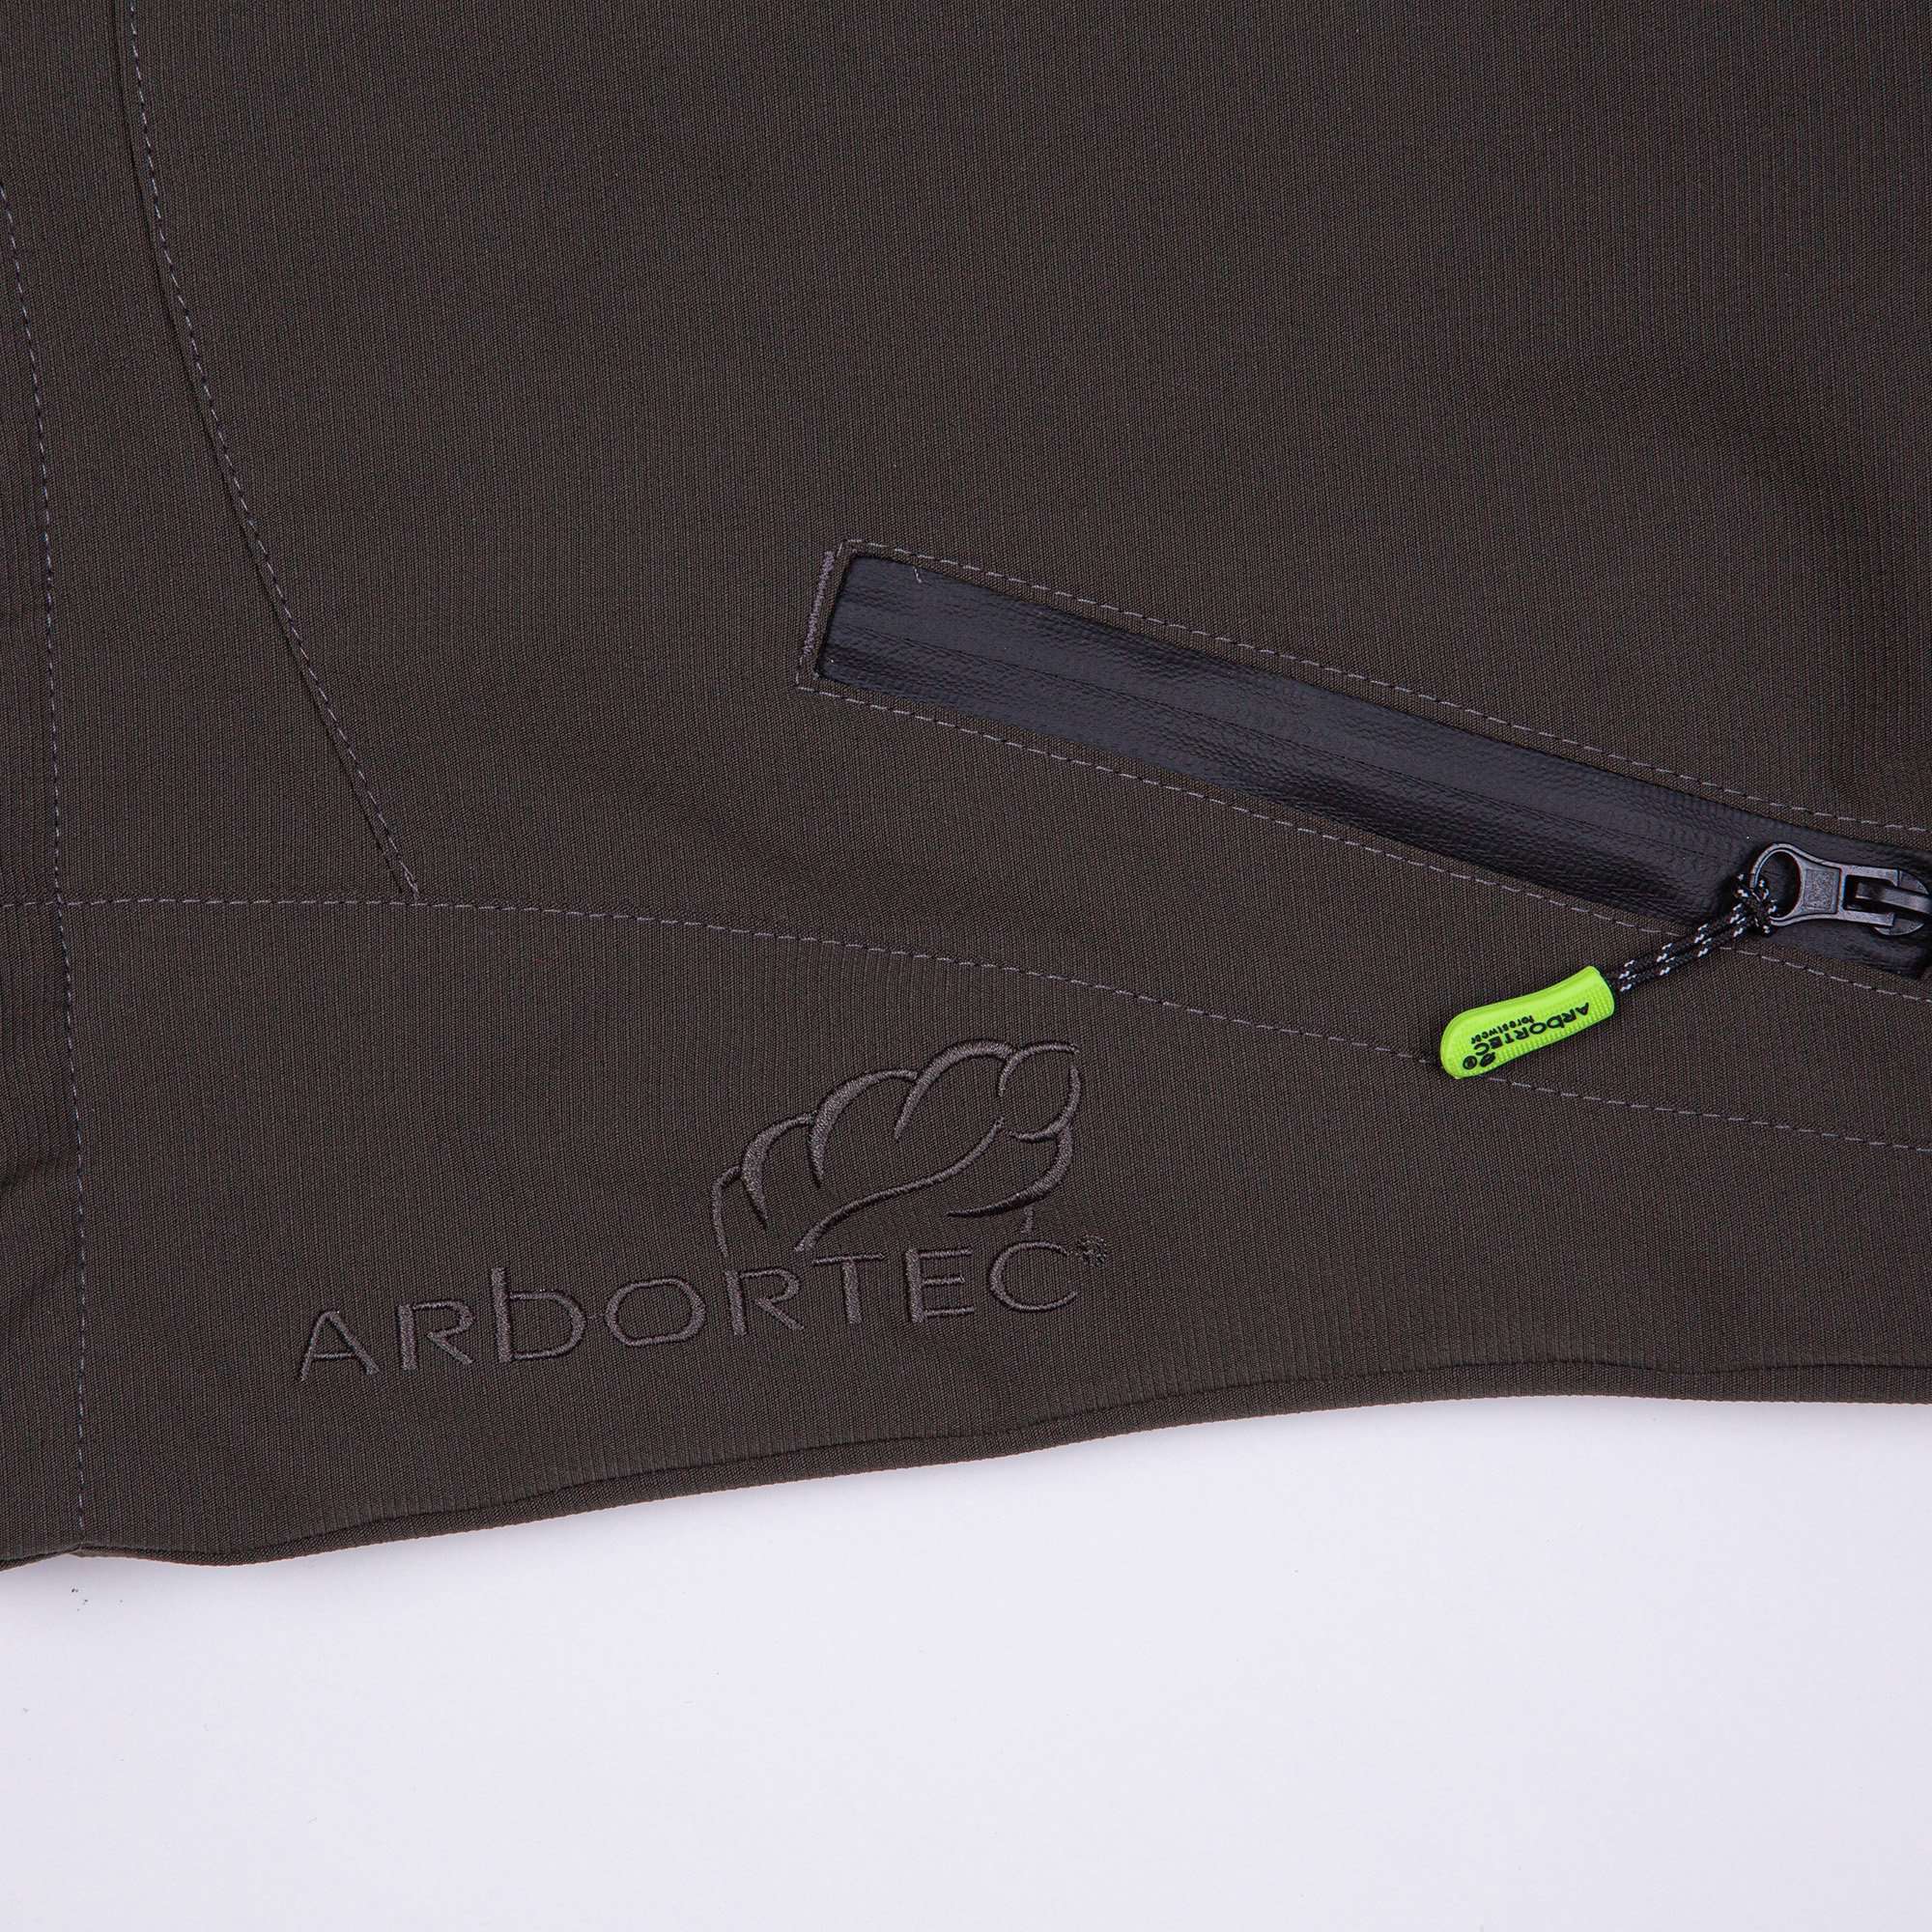 AT4100 Breatheflex Pro Work Jacket - Olive.